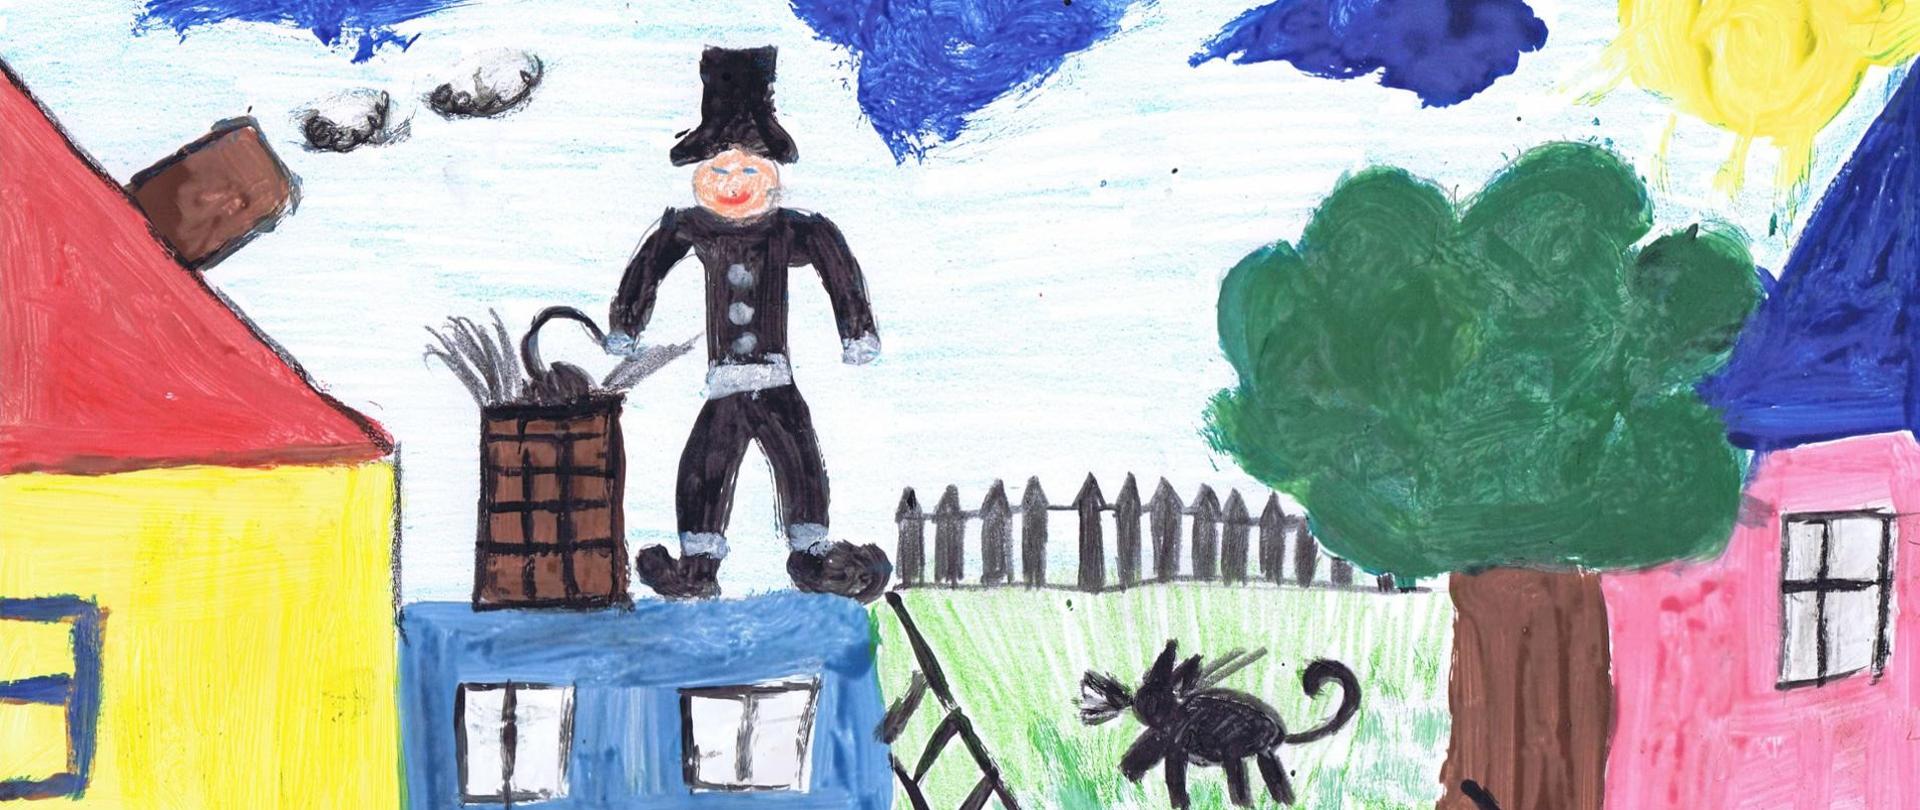 Ilustracja przedstawia kolorowy rysunek wykonany przez dziecko, na pierwszym planie na środku zdjęcia znajduje się kominiarz ubrany na czarno czyszczący komin niebieskiego domu, po prawej stronie znajduje się świecące słońce nad różowym domem z niebieskim dachem, obok rośnie drzewo pełne zielonych liści. Bliżej środka ilustracji widać przebiegającego po trawie czarnego kota, po lewej stronie zaobserwować można kolejny dom koloru żółtego z czerwonym dachem, z którego z brązowego komina wydobywa się dym.